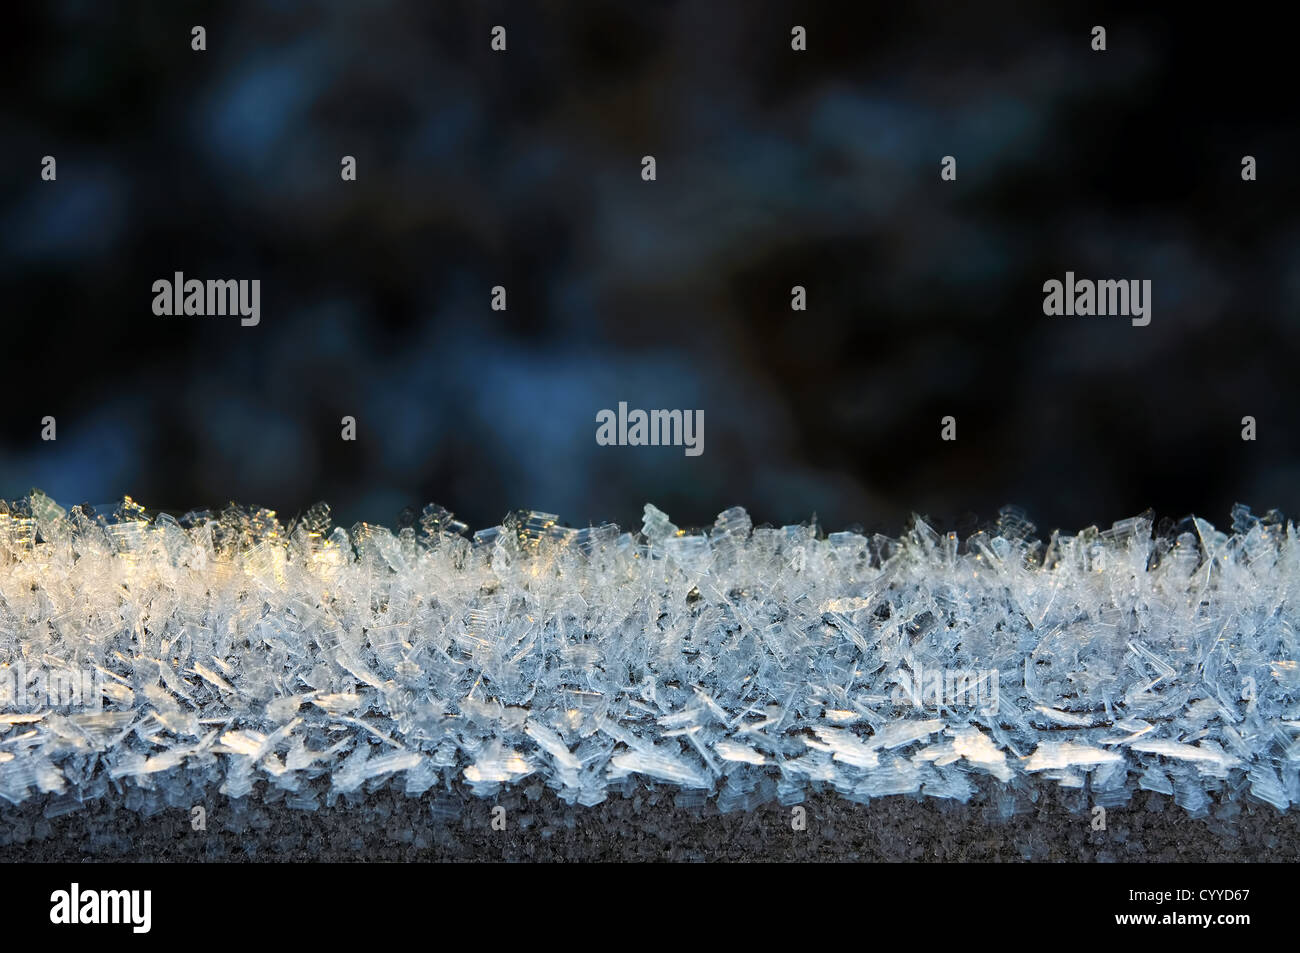 Close-up d'une frontière avec des cristaux de glace sur un fond sombre Banque D'Images